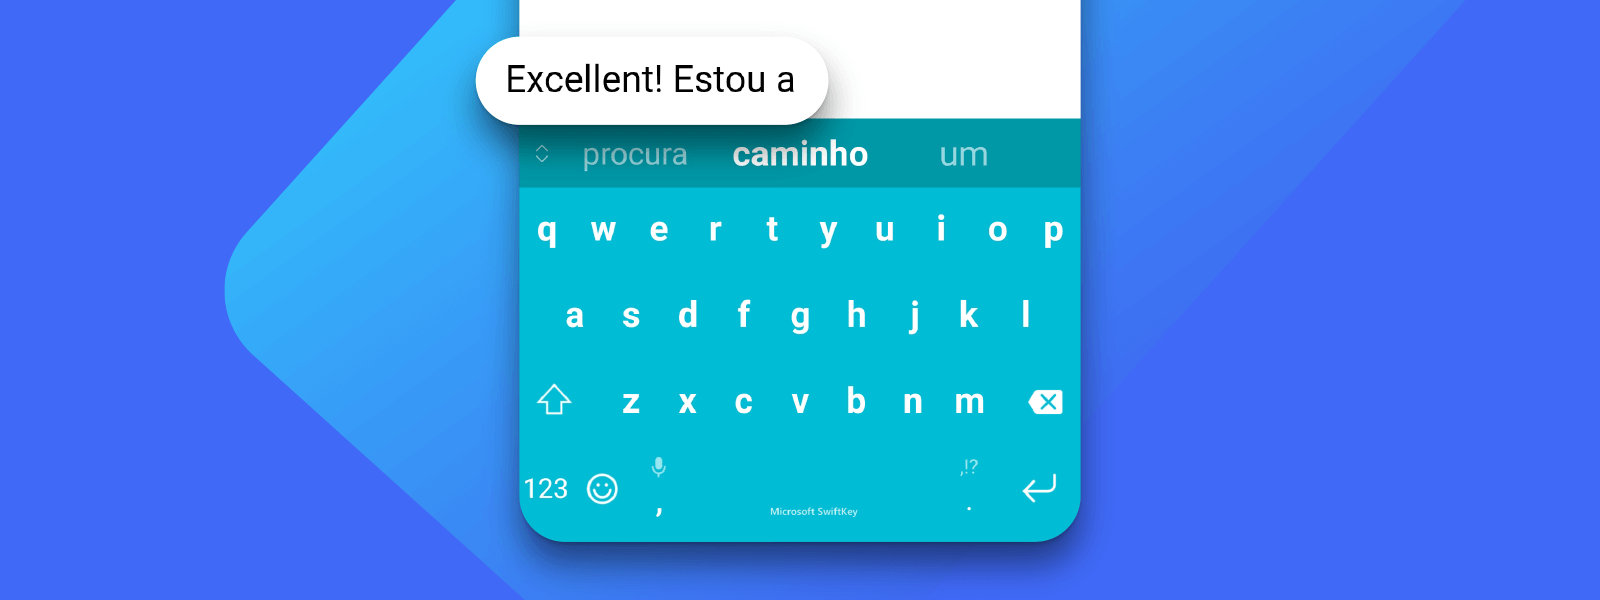 Dispositivo Android com SwiftKey para digitar em vários idiomas